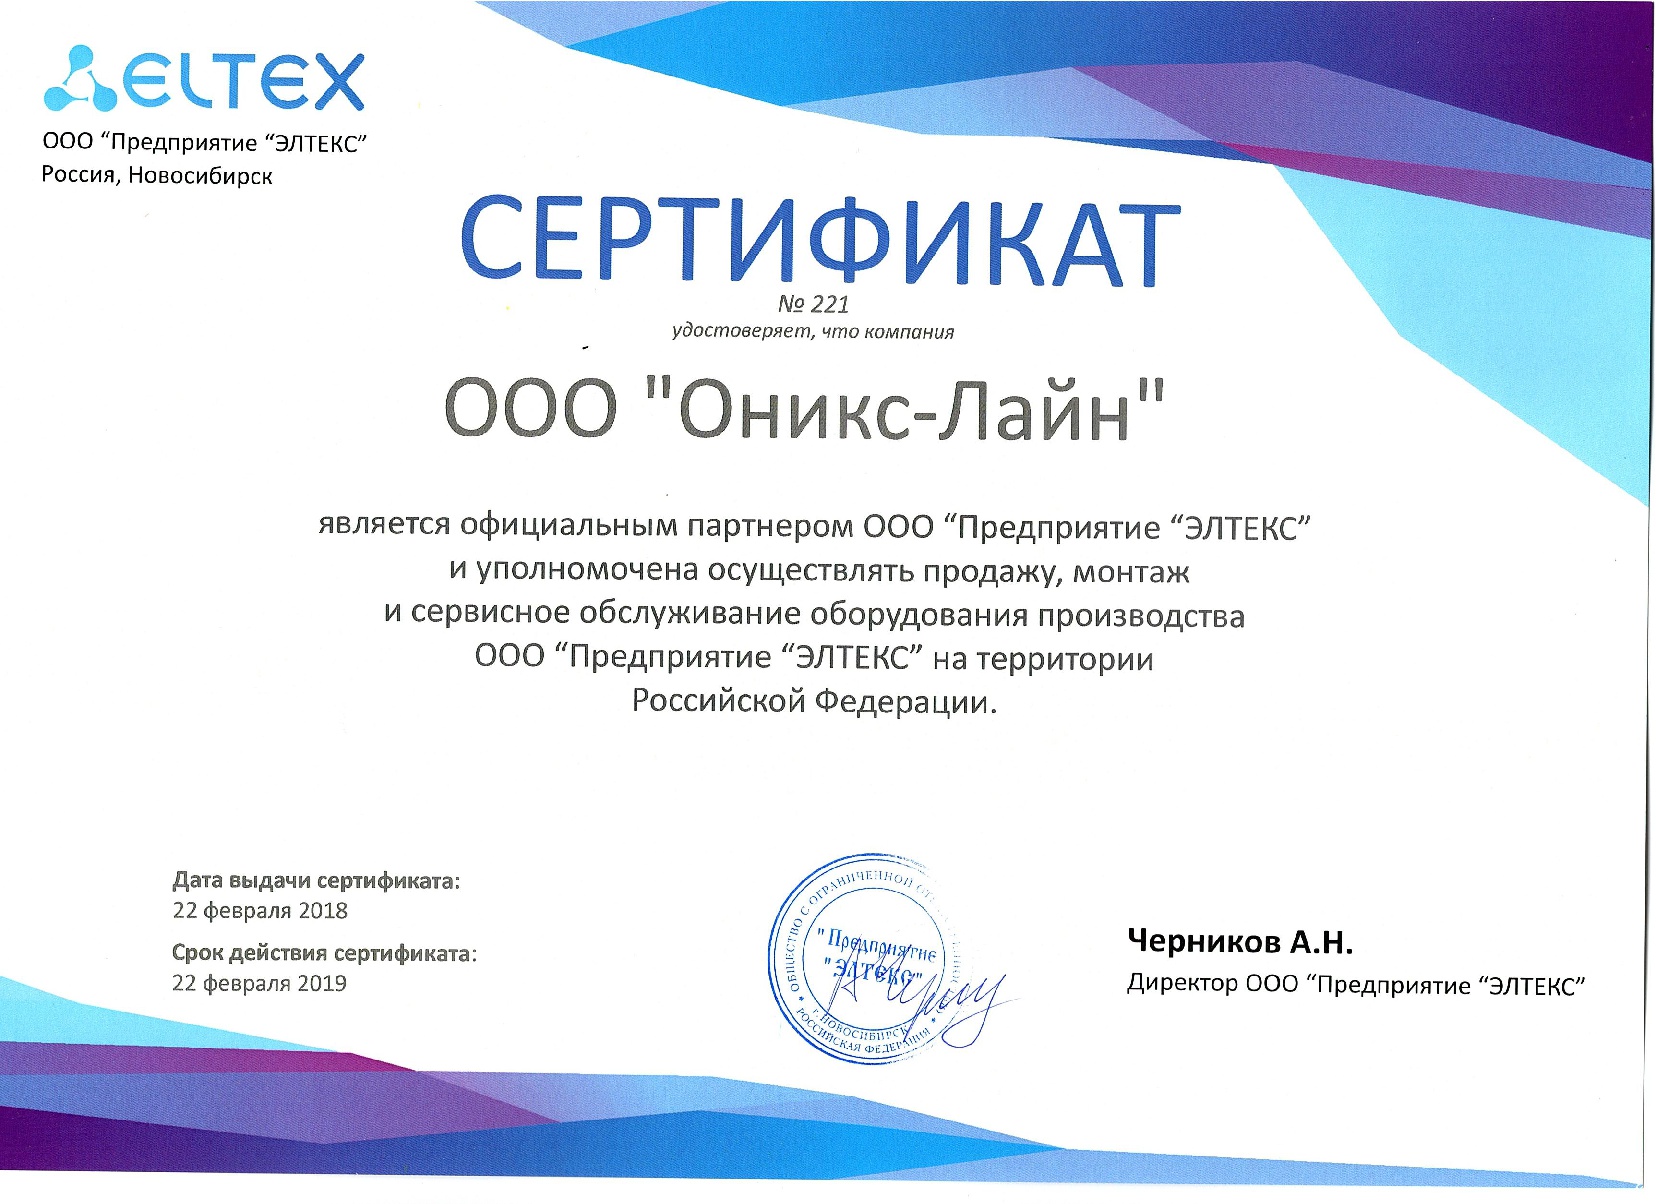 Сертификат официального партнера ООО "Предприятия "ЭЛТЕКС"